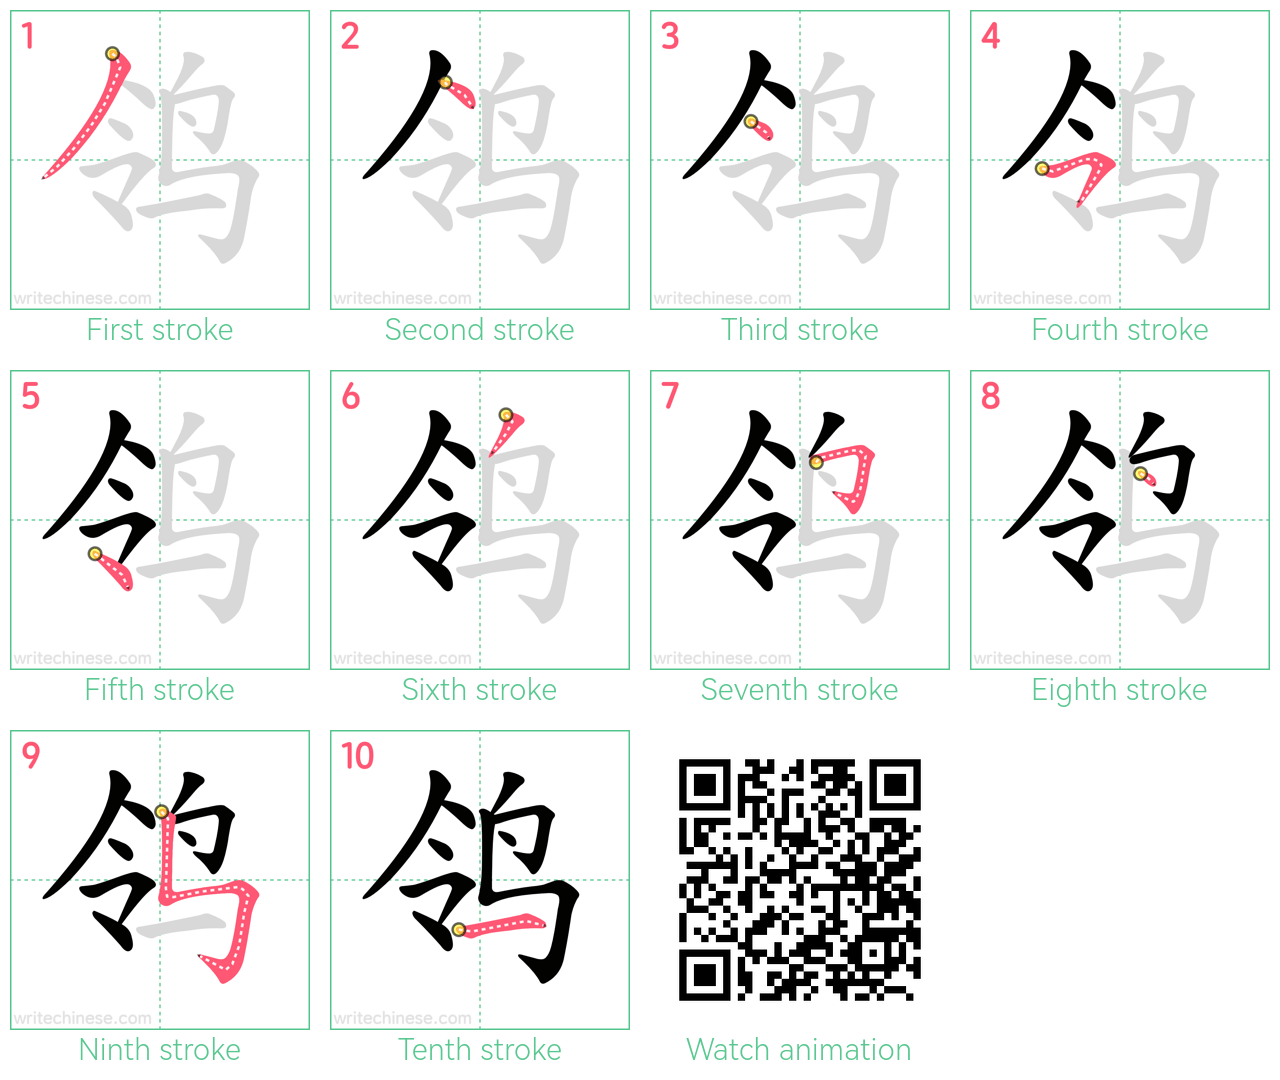 鸰 step-by-step stroke order diagrams